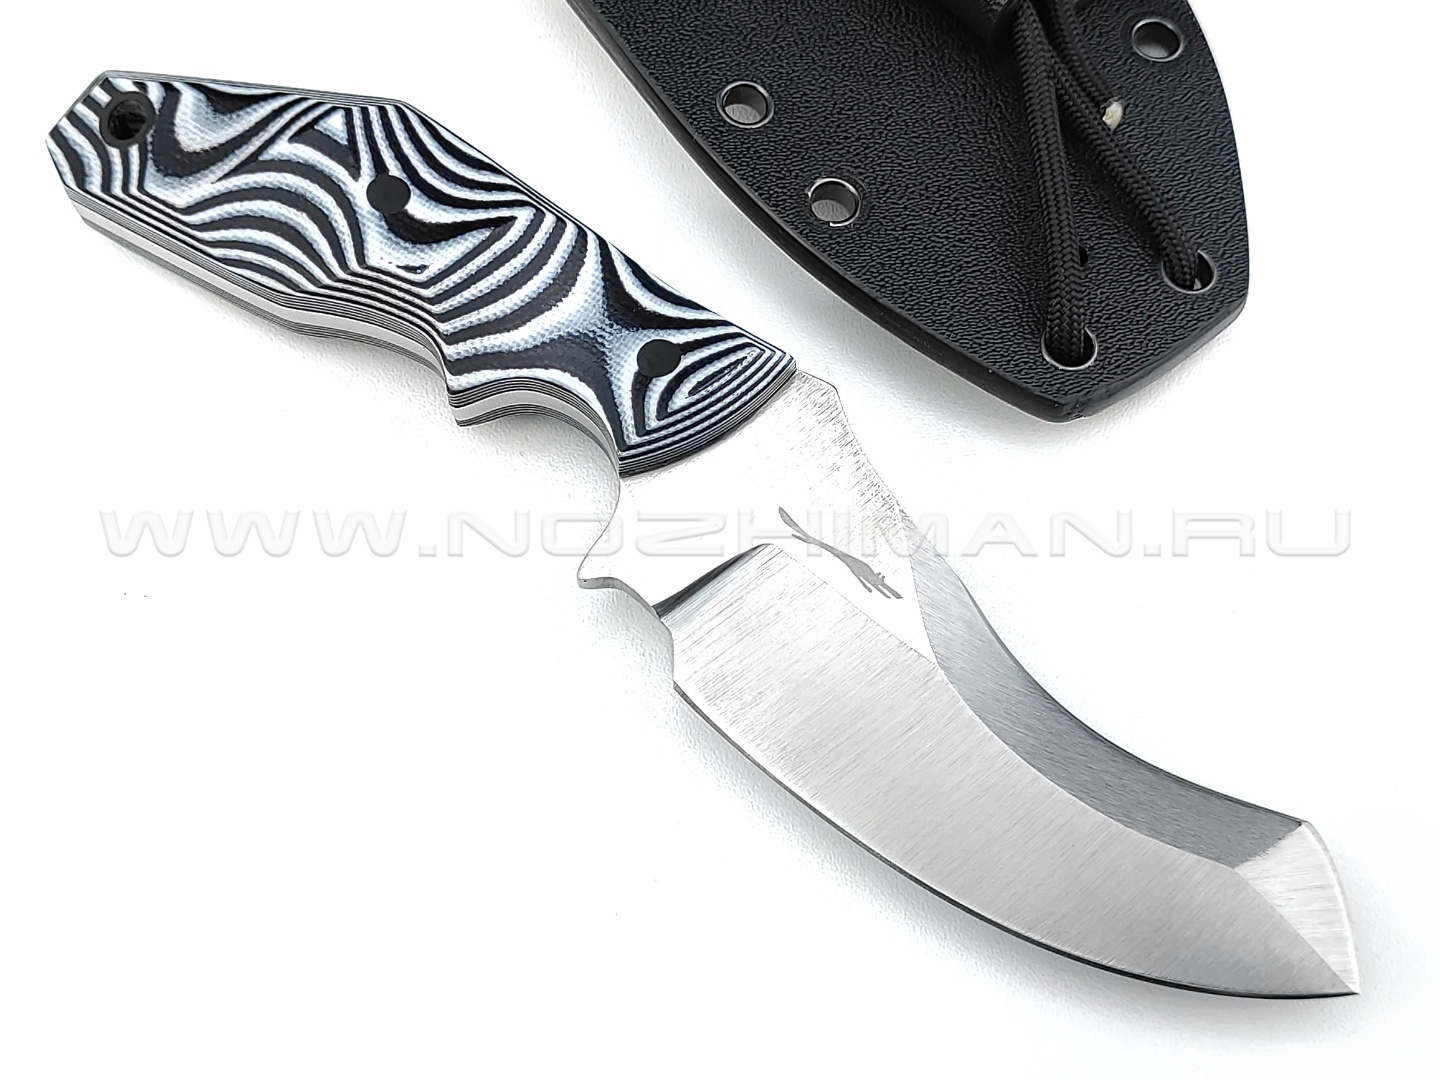 Волчий Век нож "Кондрат 222" сталь Niolox WA, рукоять G10 black & white